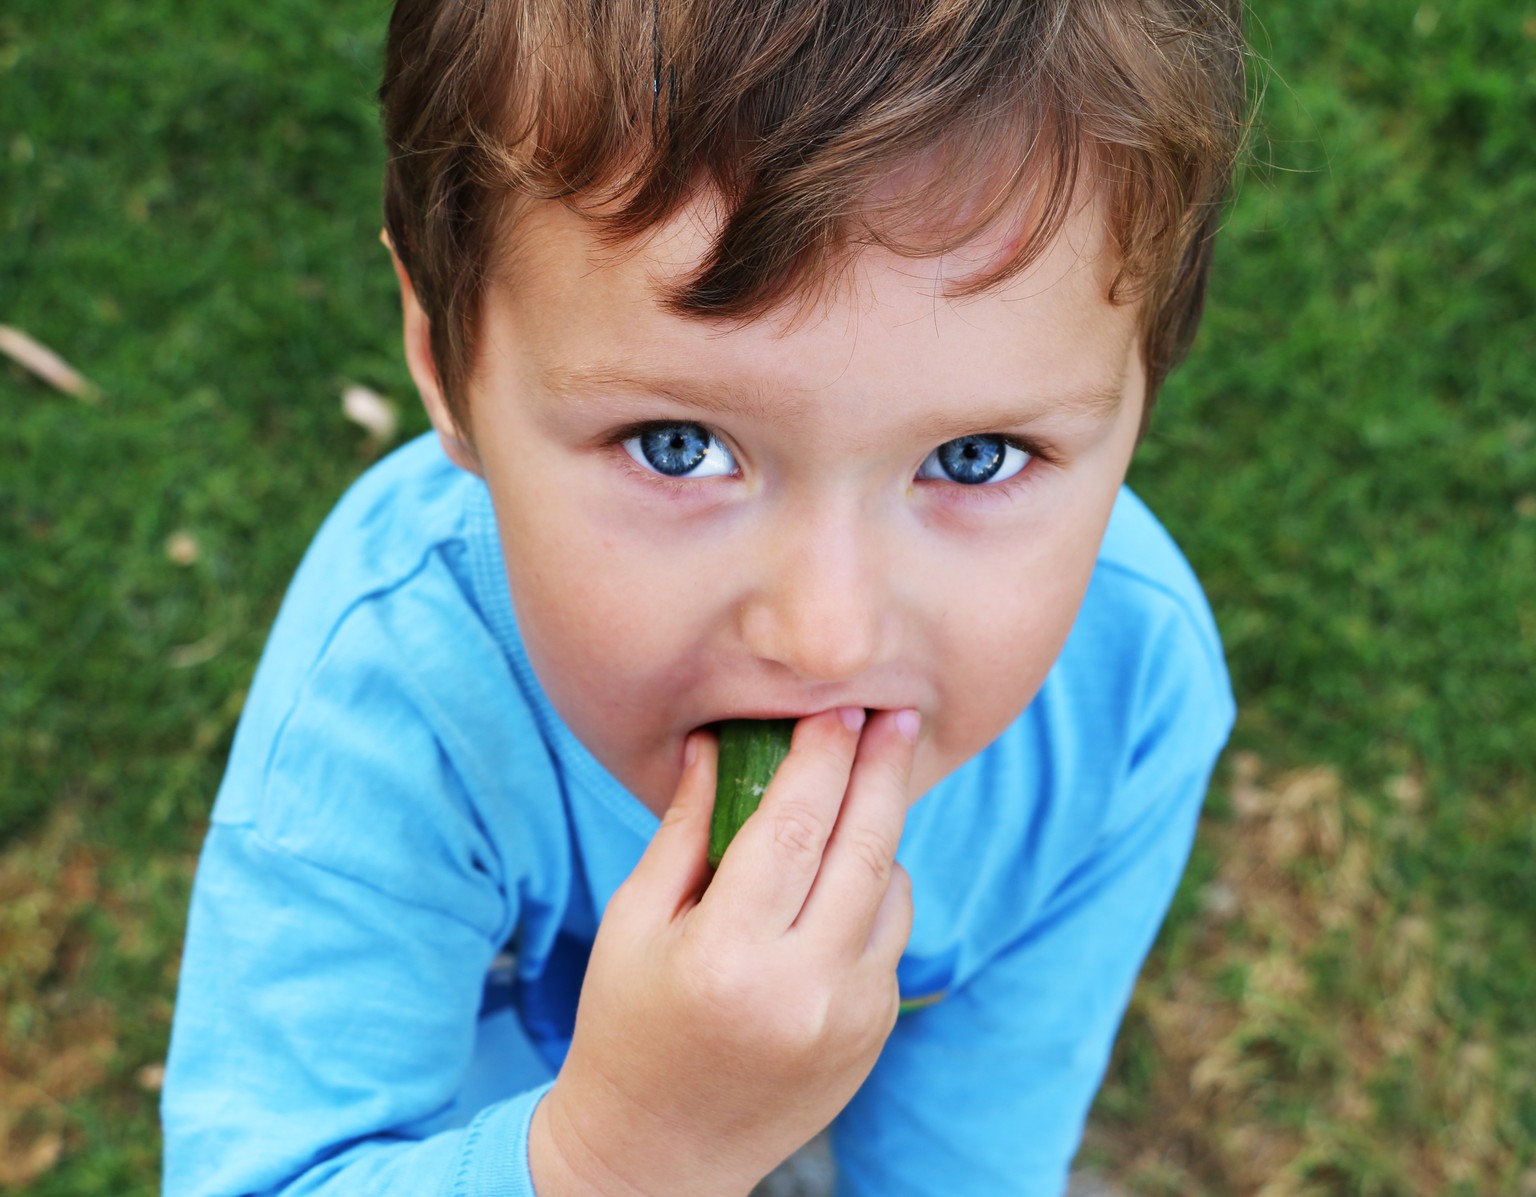 A little boy is eating a cucumber